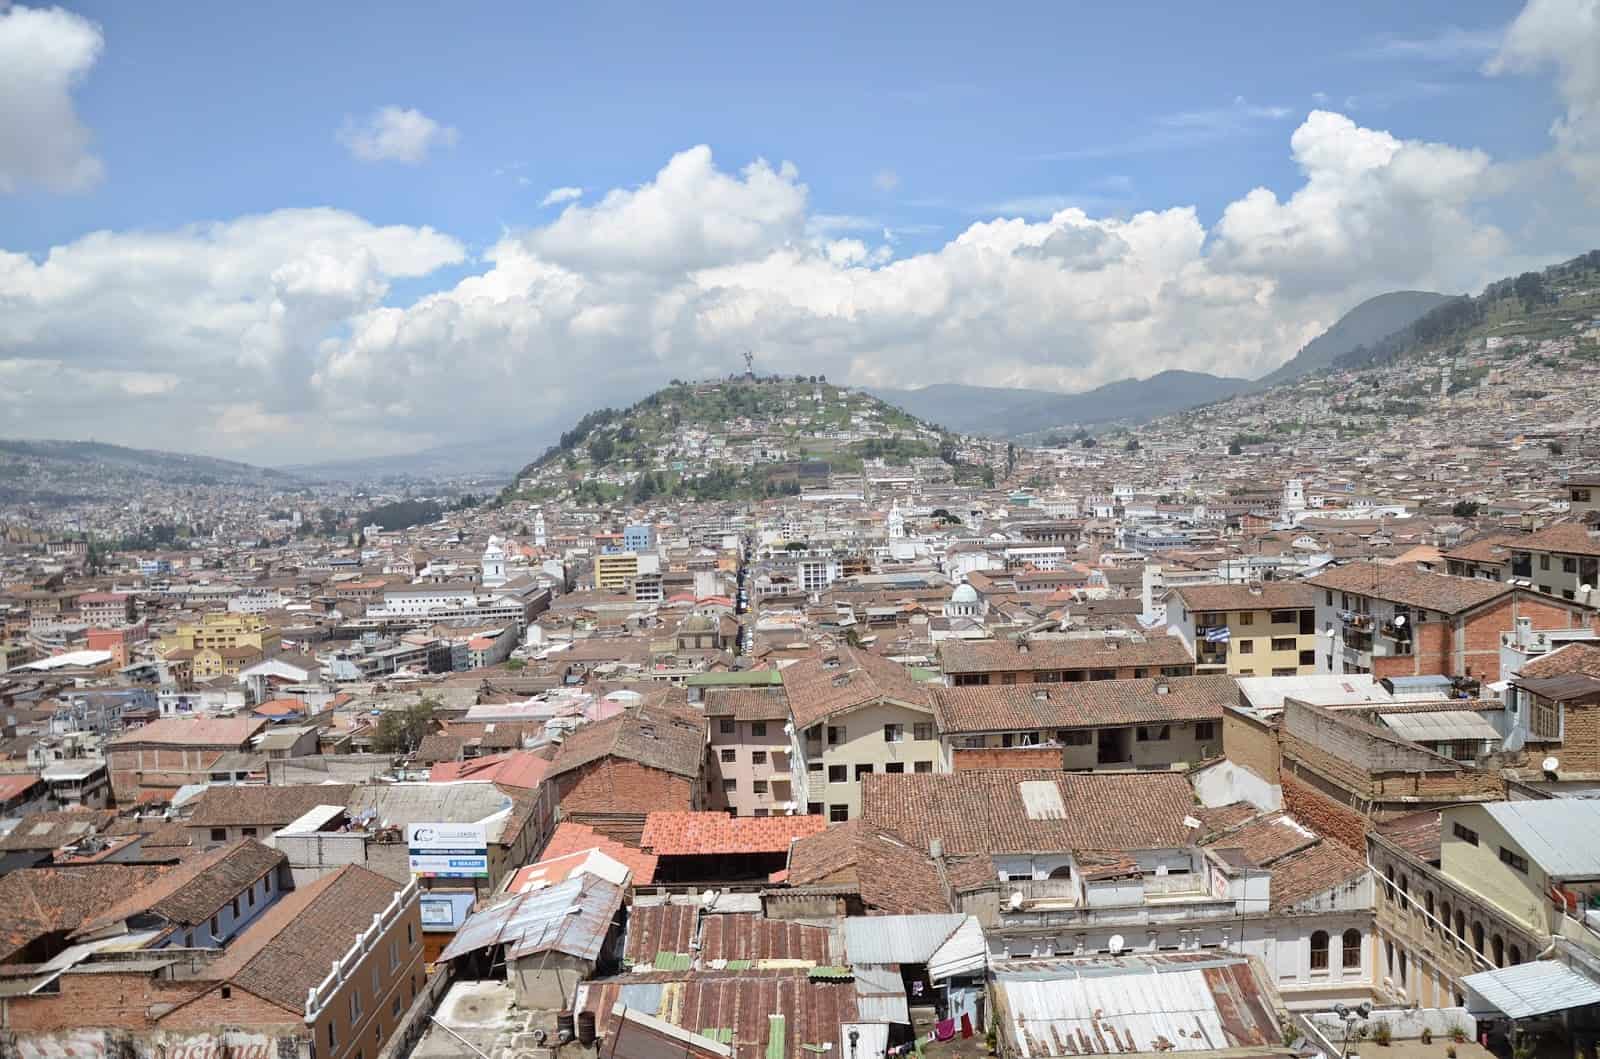 View of Quito from the Basílica del Voto Nacional in Quito, Ecuador